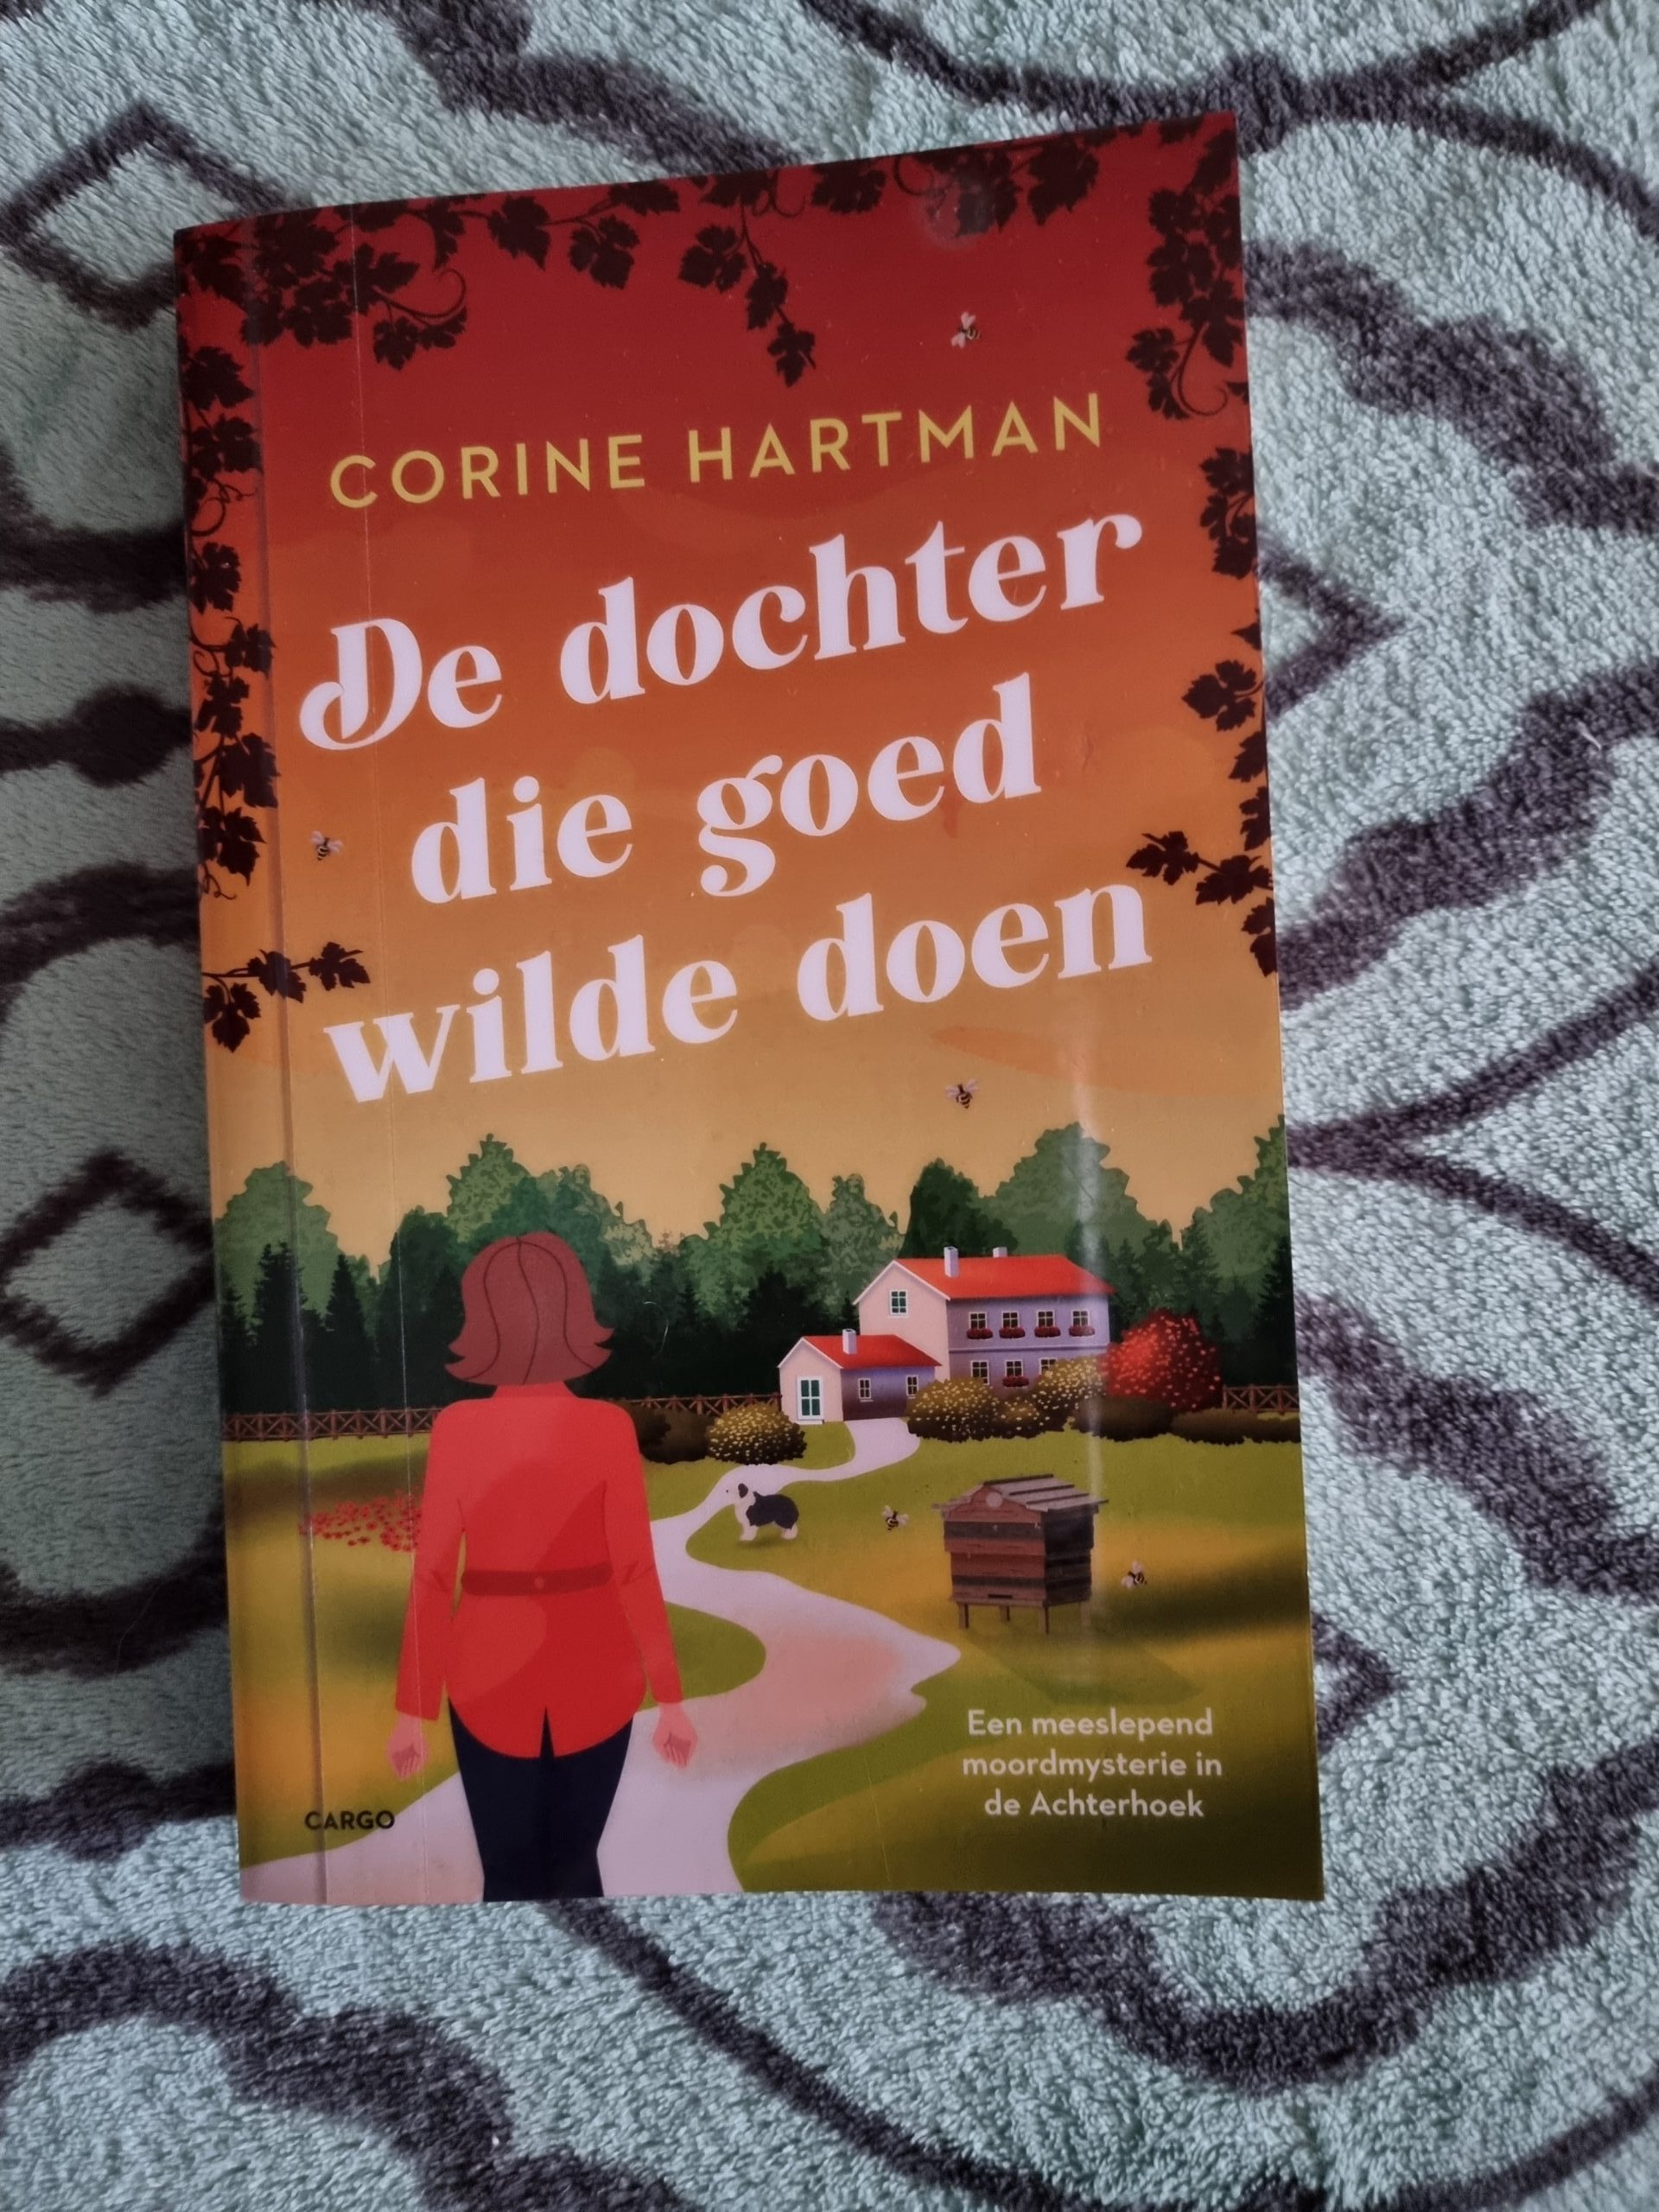 Books || De dochter die goed wilde doen – Corine Hartman